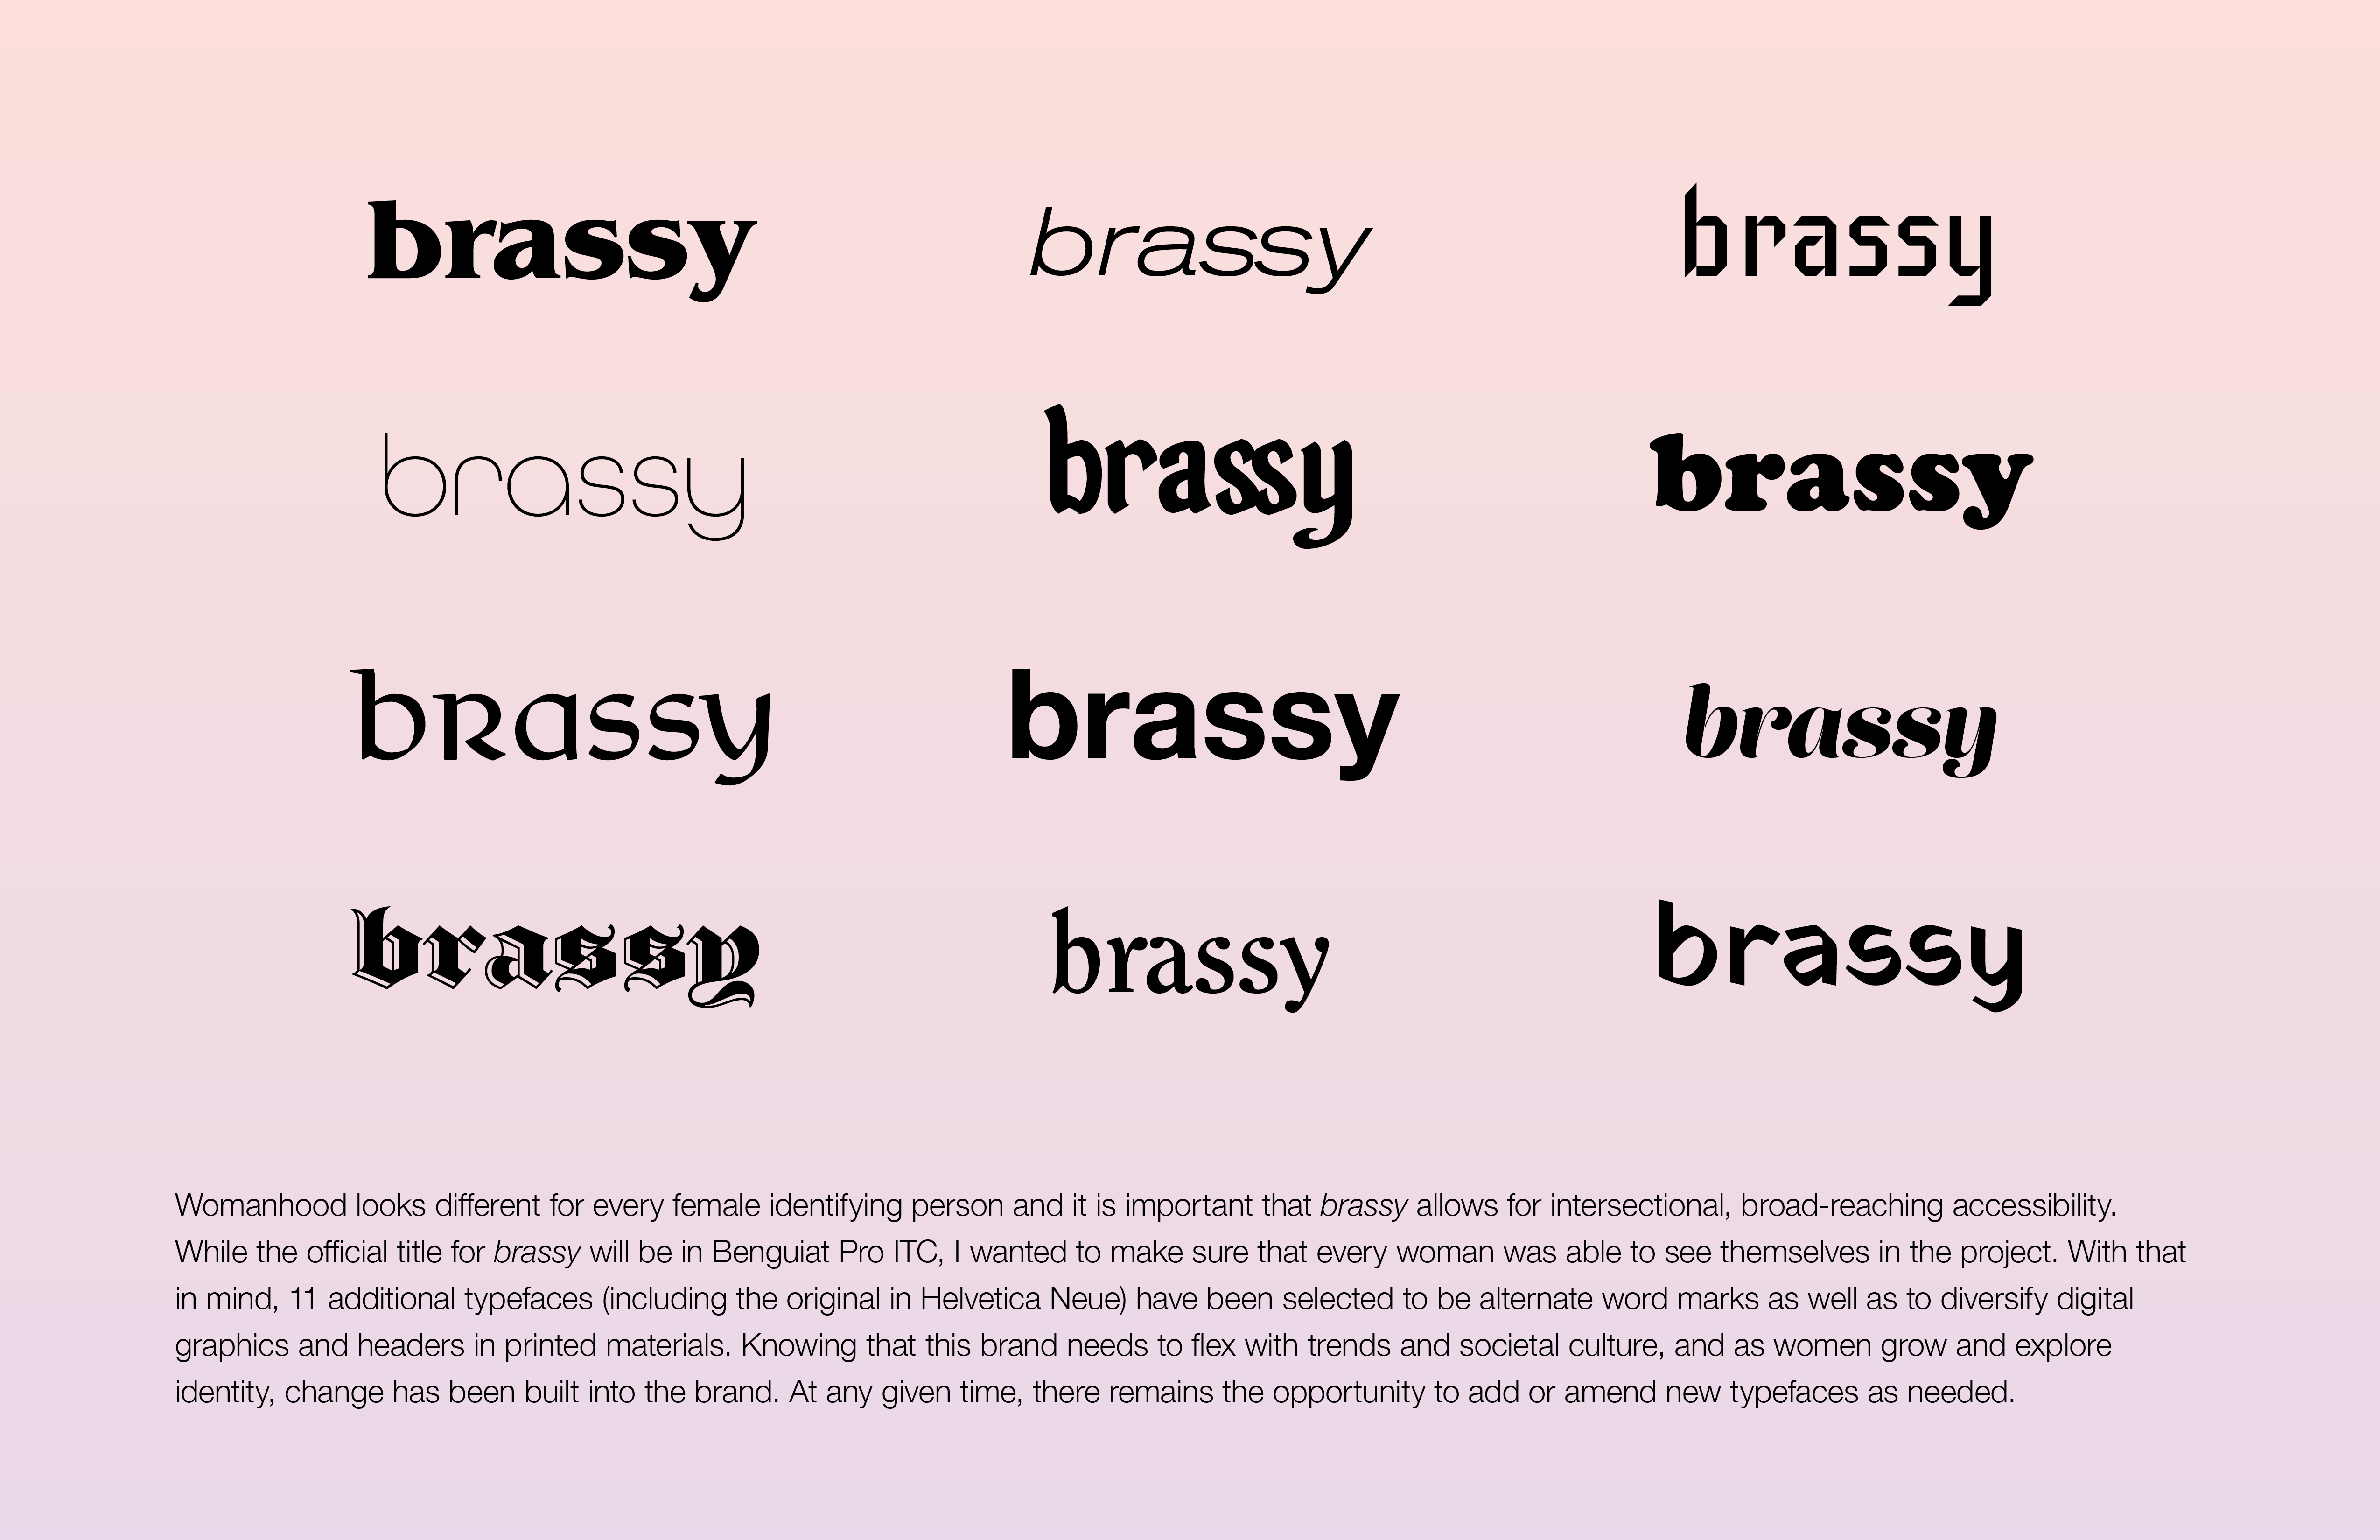 brassy graphic identity-typefaces